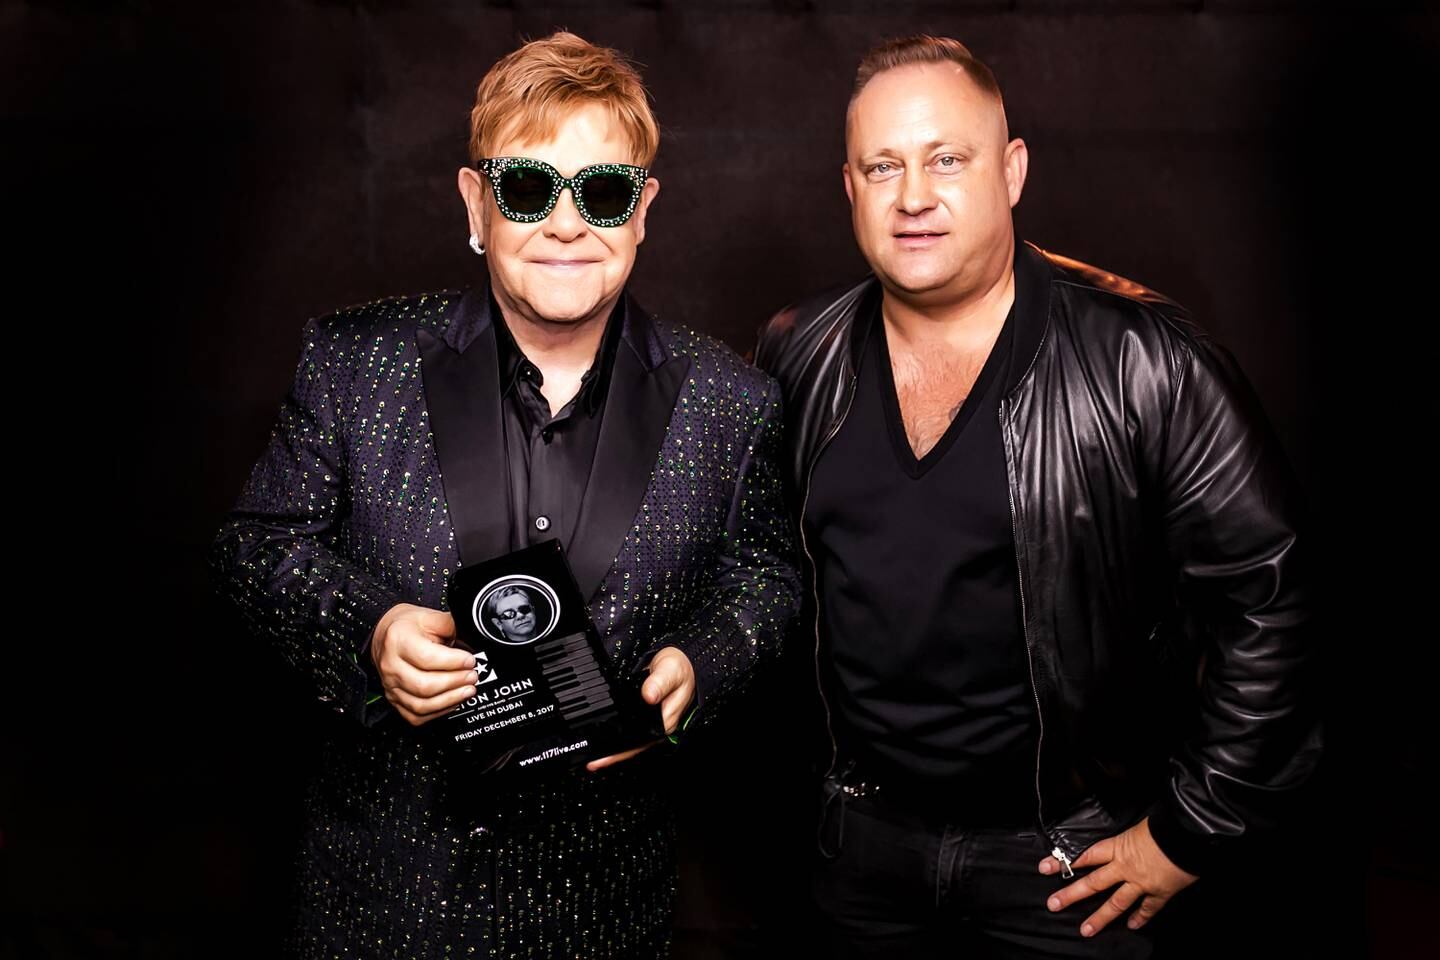 Thomas Ovesen helped bring Elton John to Dubai in 2017. Photo: Thomas Ovesen